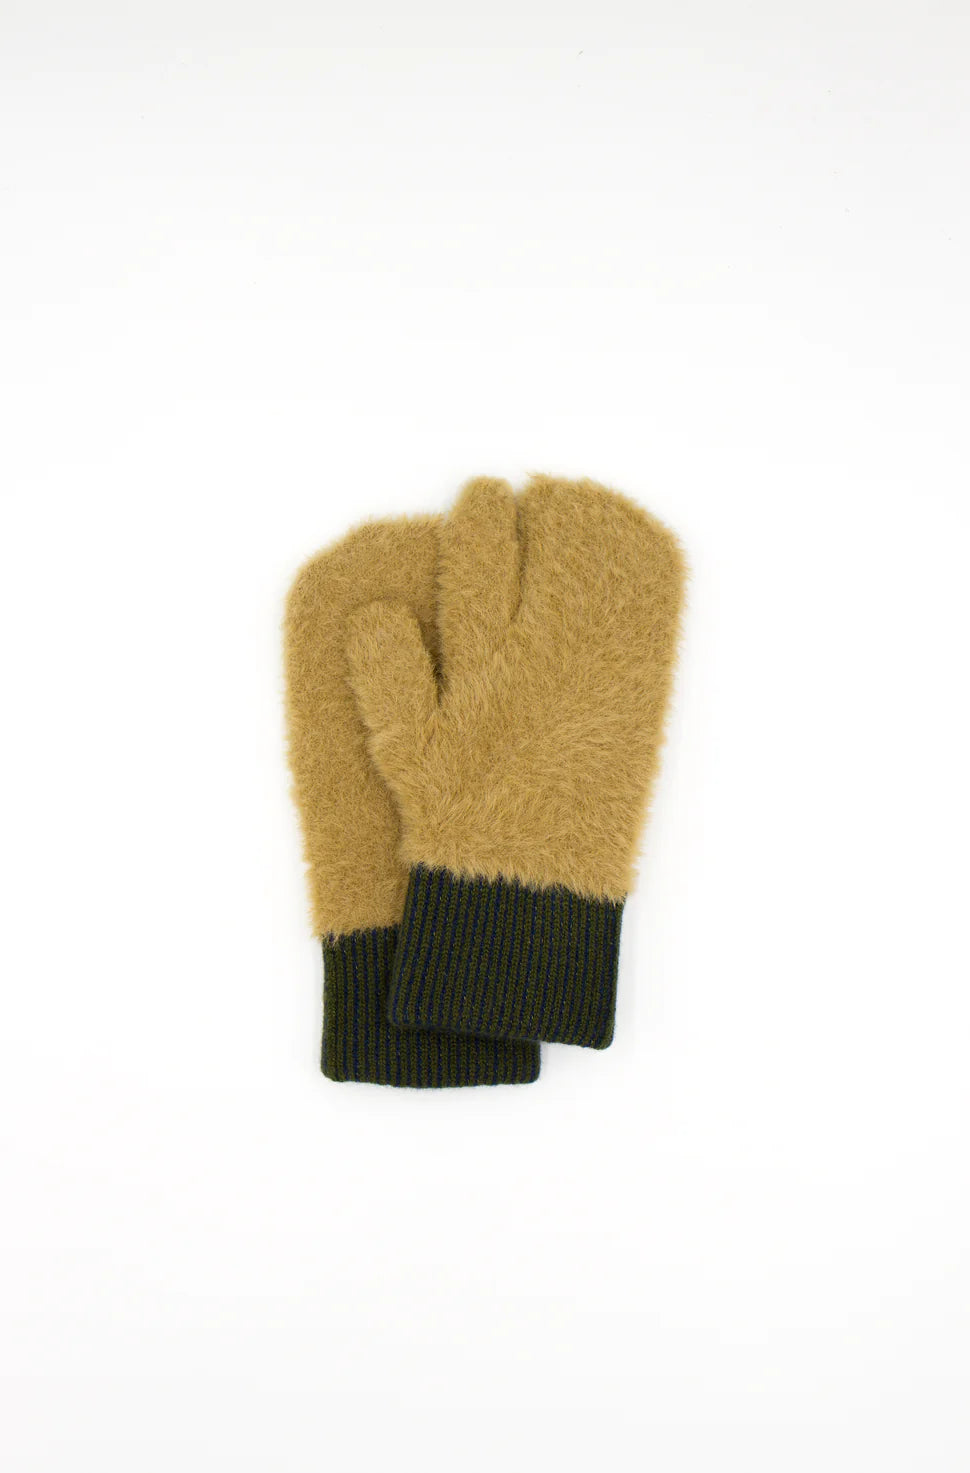 Elpis Evolg Gloves